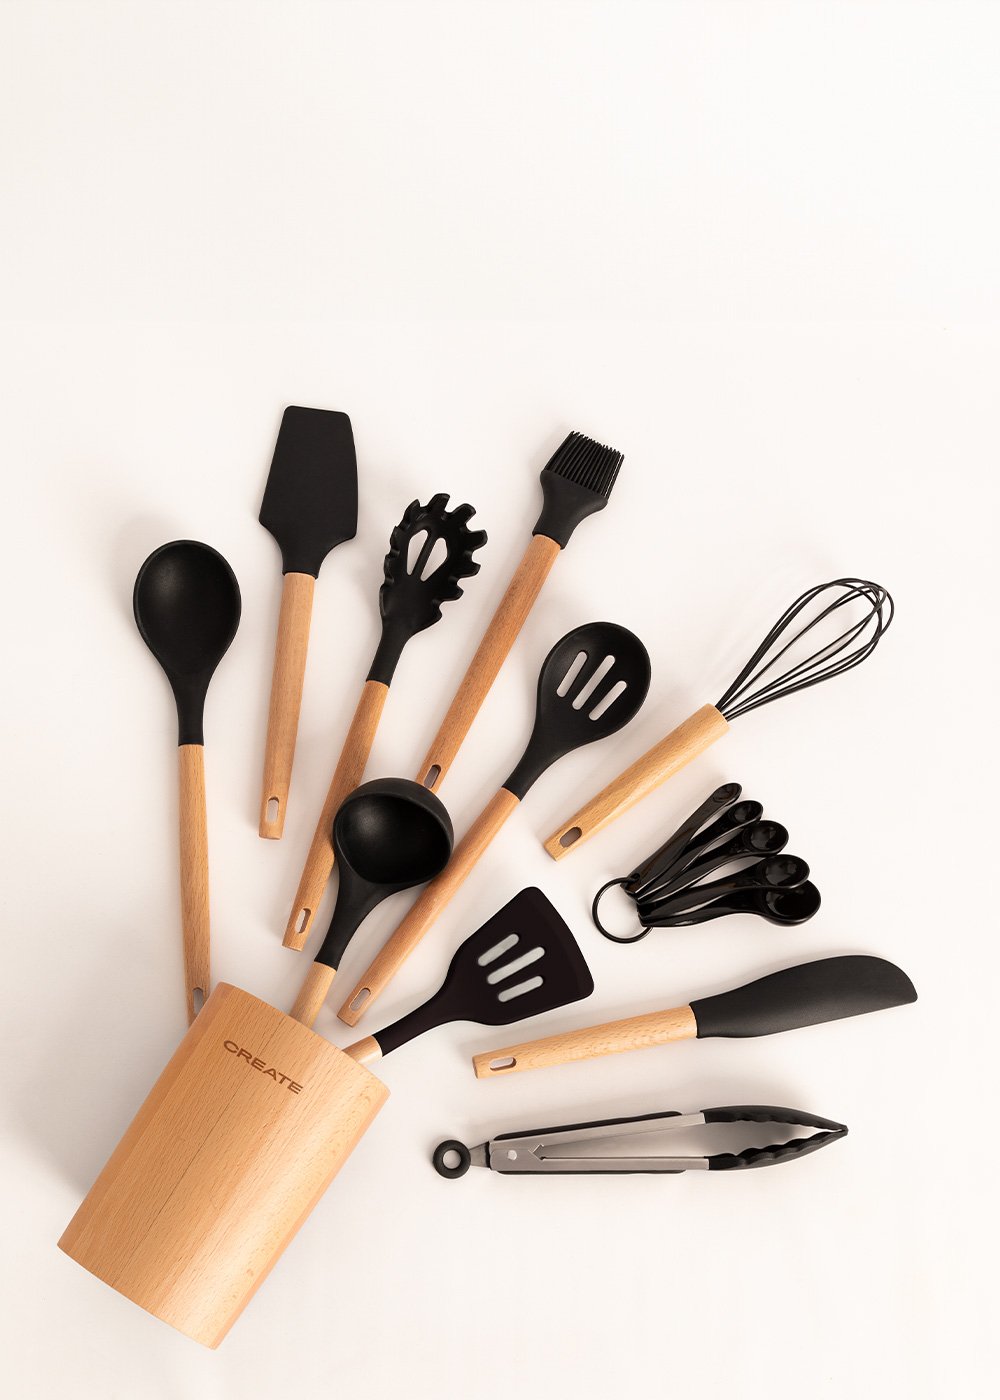 Pack FRYER AIR PRO LARGE 6.2 L + Set de utensilios de cocina – Bechester